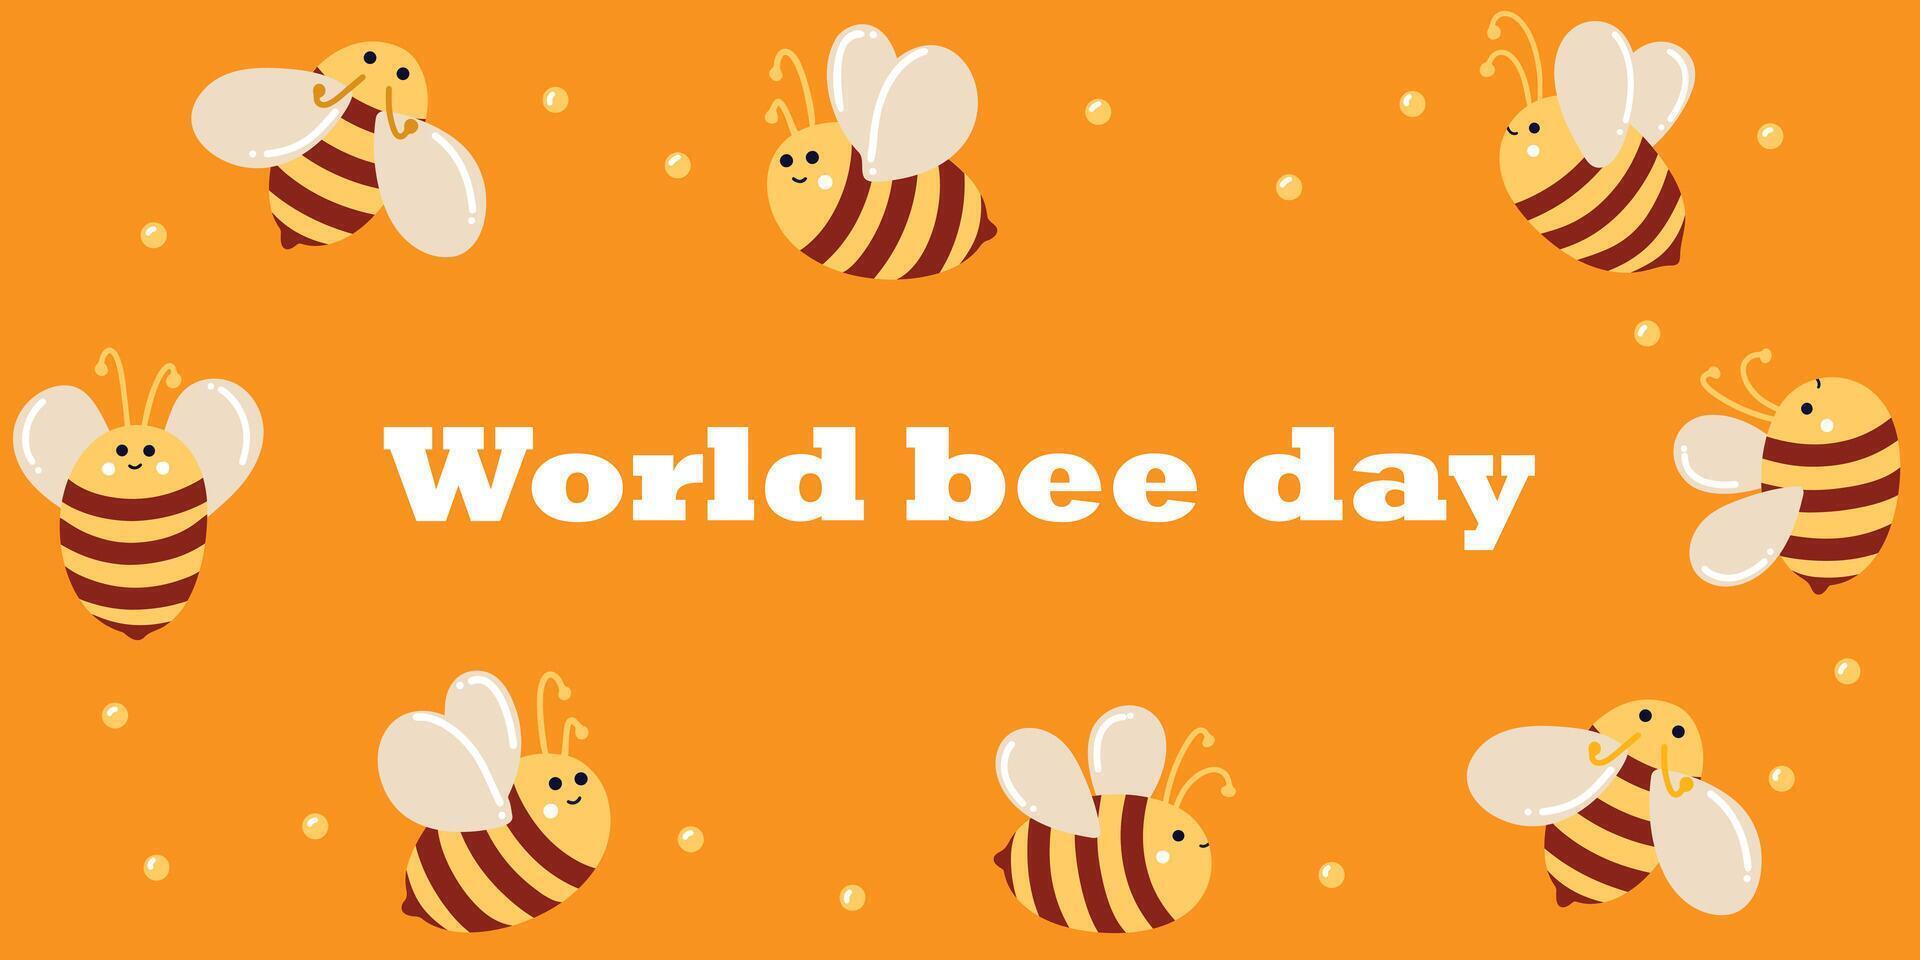 wereld bier dag van 20 kunnen. banier met schattig honing bijen in plat leggen stijl voor web gebruiken, afdrukken, spandoeken, achtergronden. vieren wereld bij dag en zorgzaam voor bijen. bijenteelt en dier zorg vector